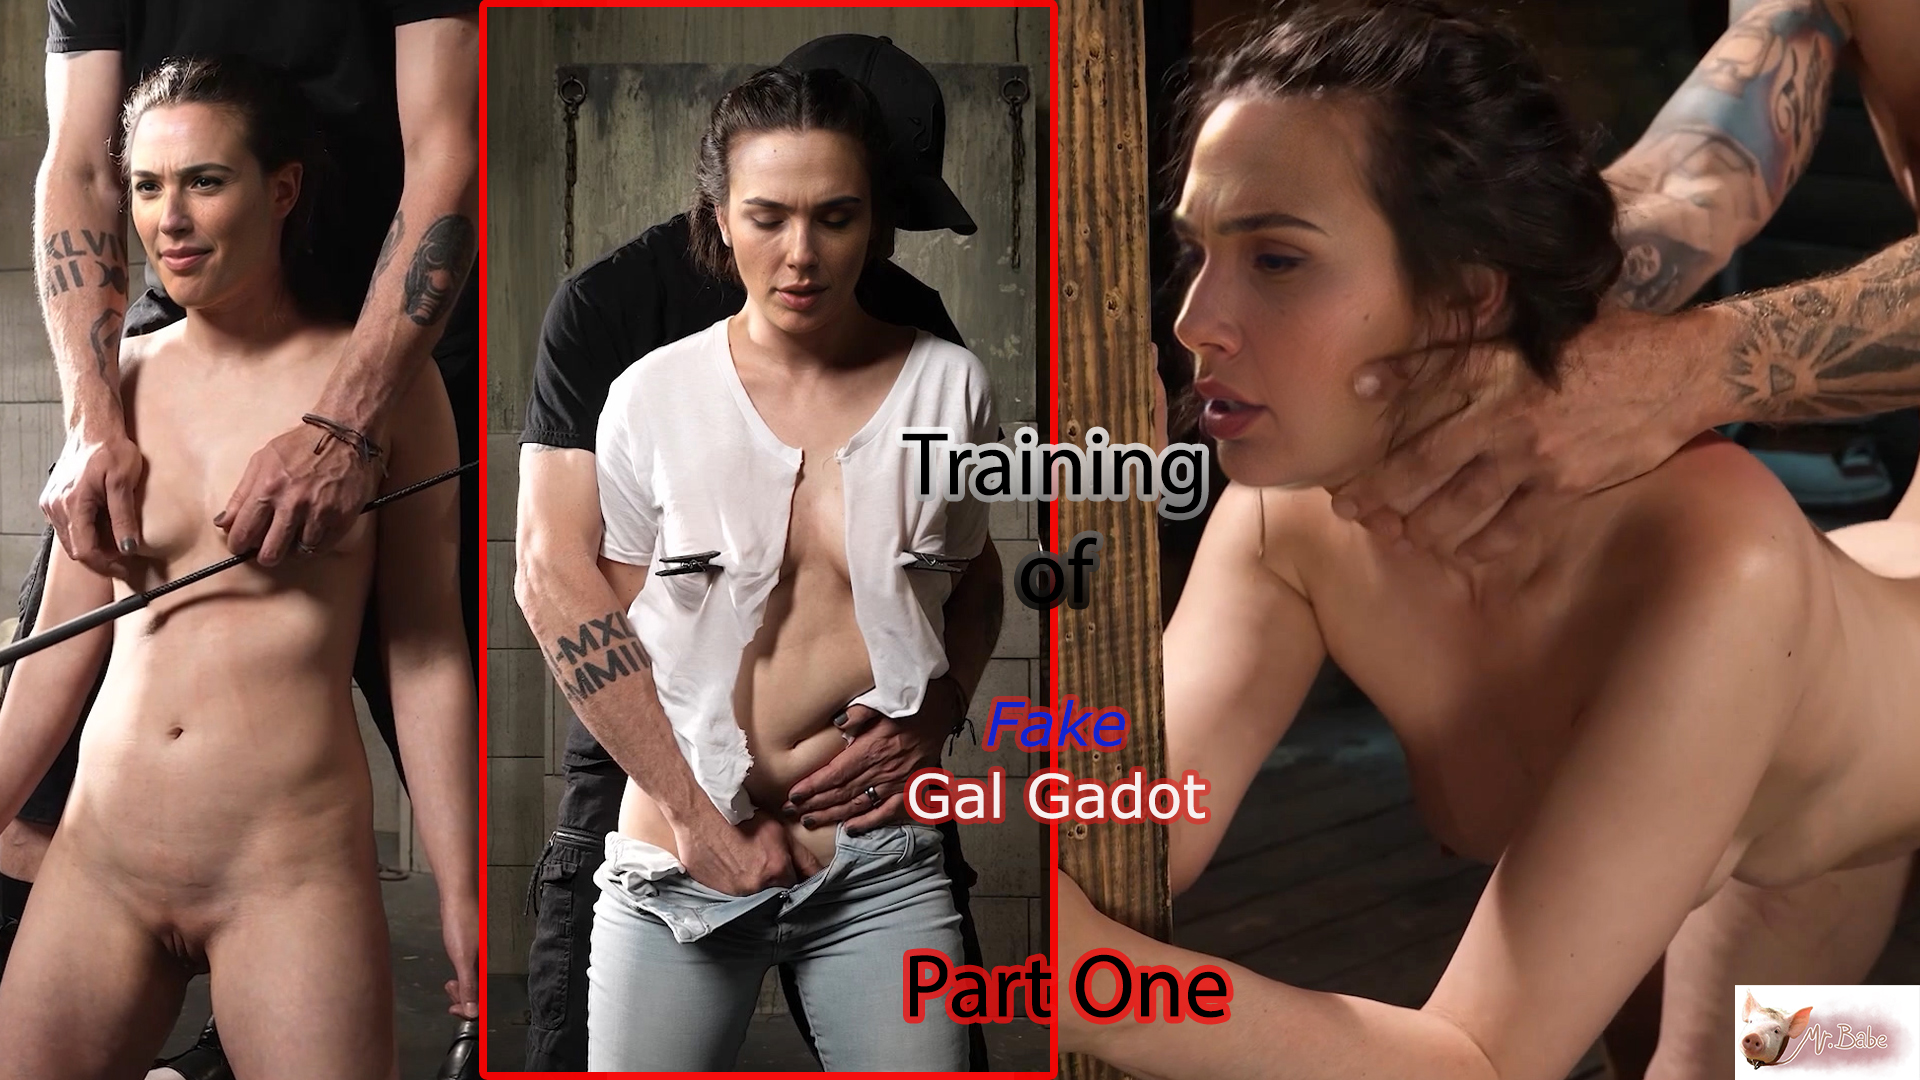 Fake Gal Gadot -(trailer) -6- PART-1 / BDSM / Free Download